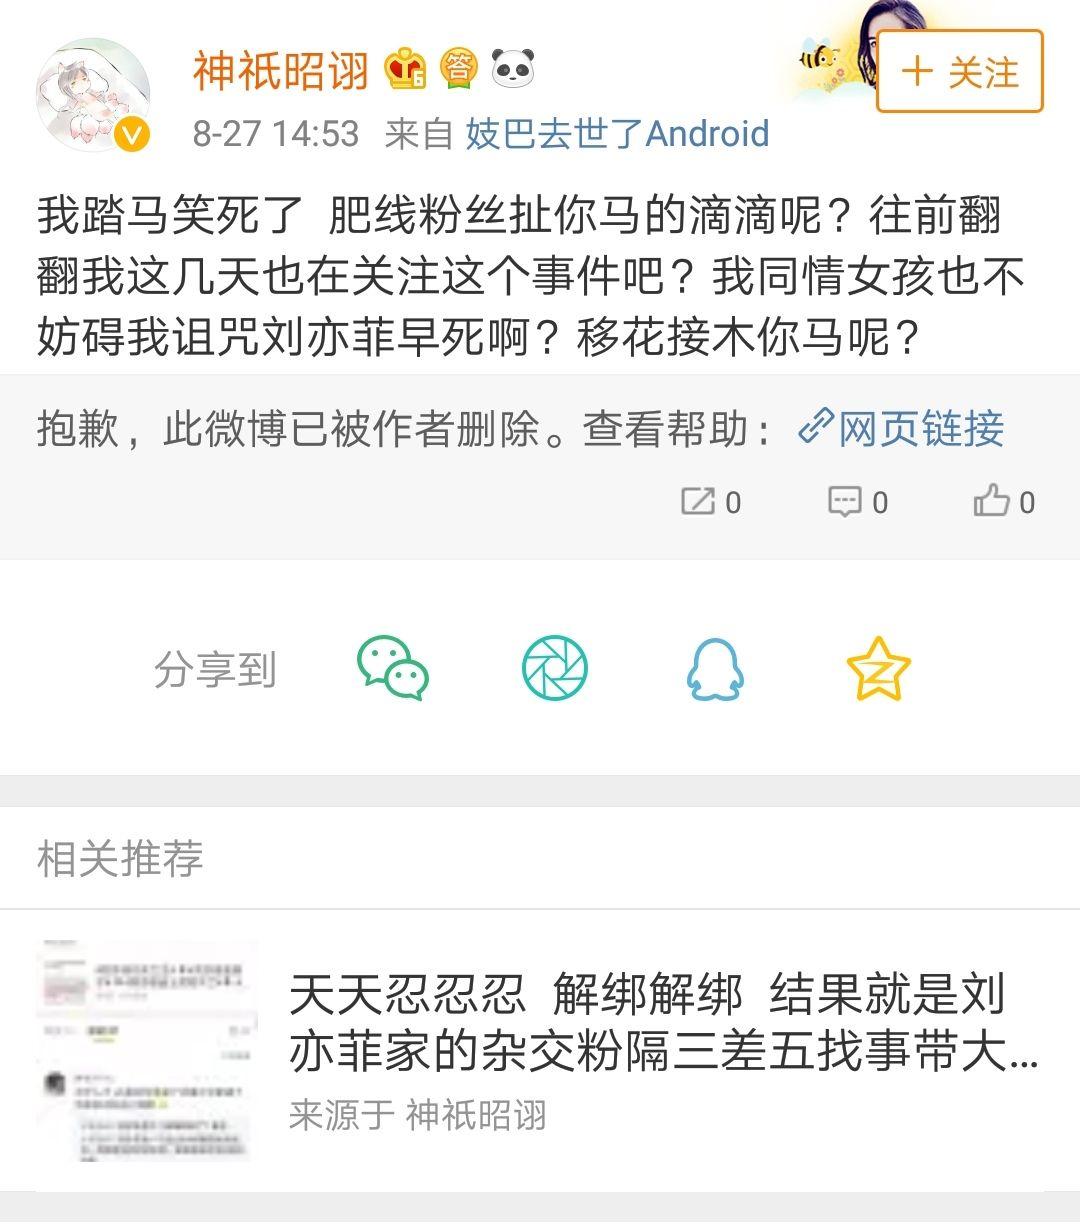 如何看待2018年刘亦菲生日,杨幂未送微博祝福